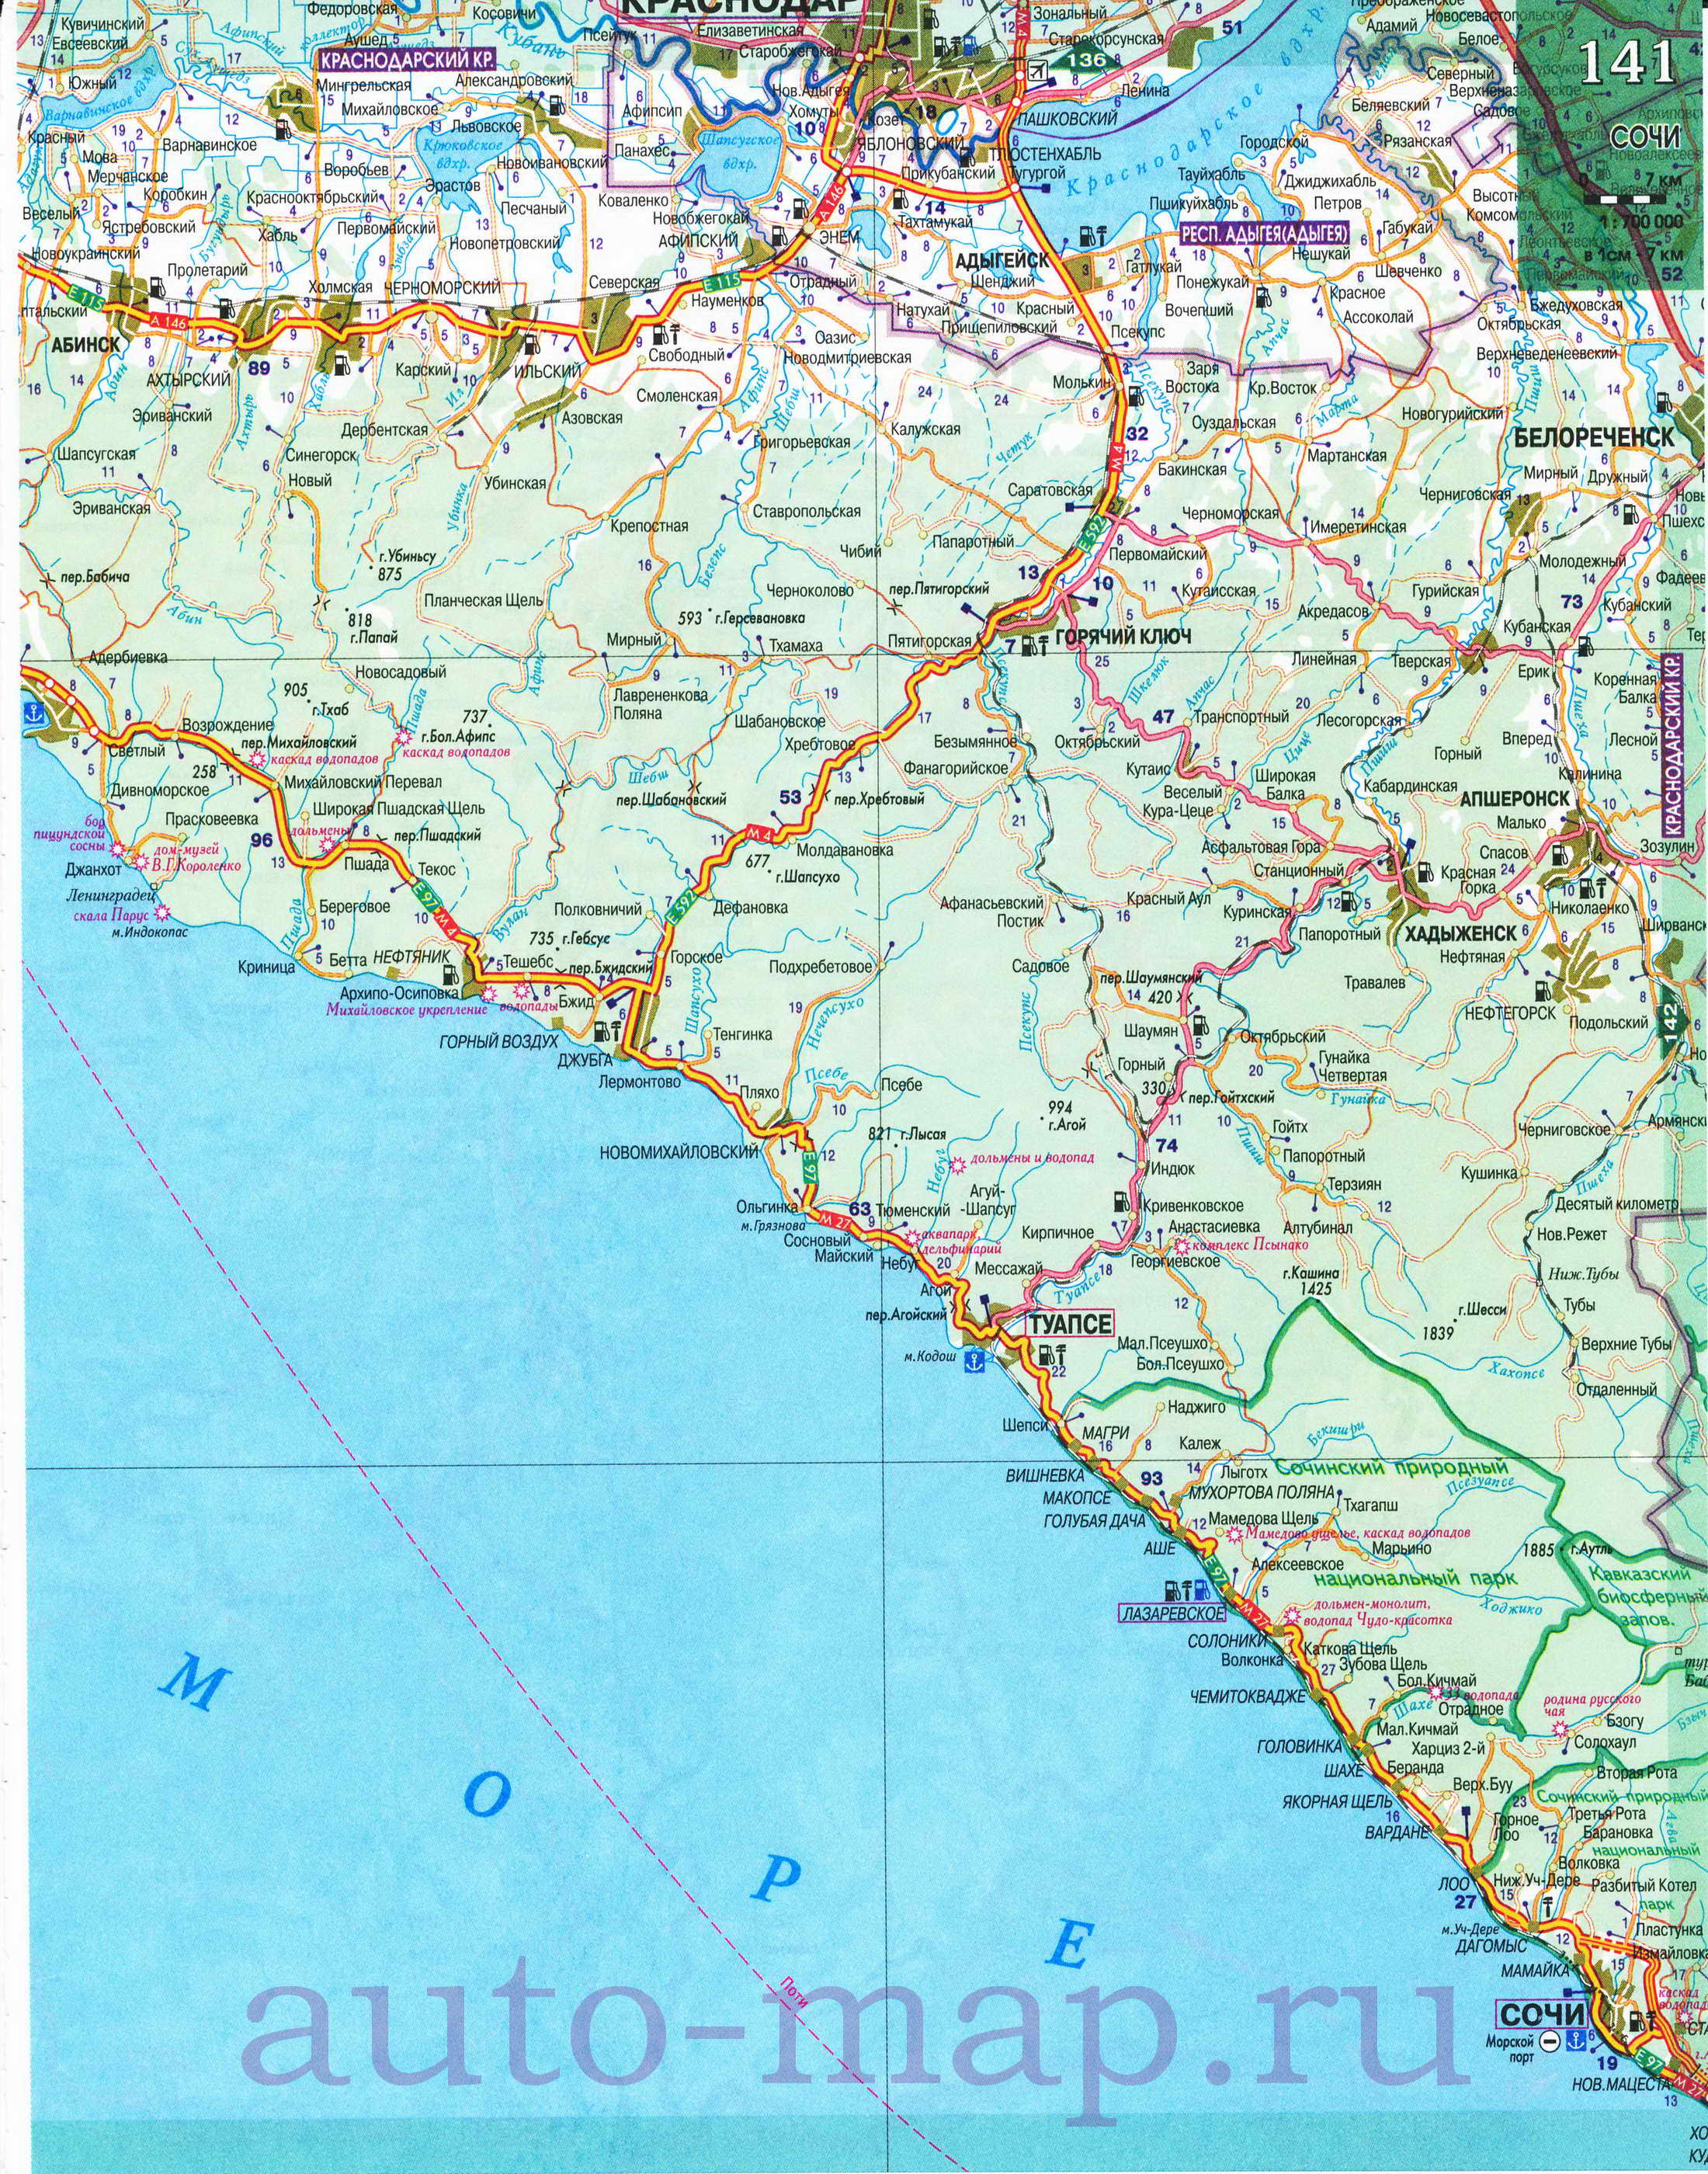  Карта Кавказа. Подробная карта Кавказа. Карта автомобильных дорог Кавказа, A0 - 